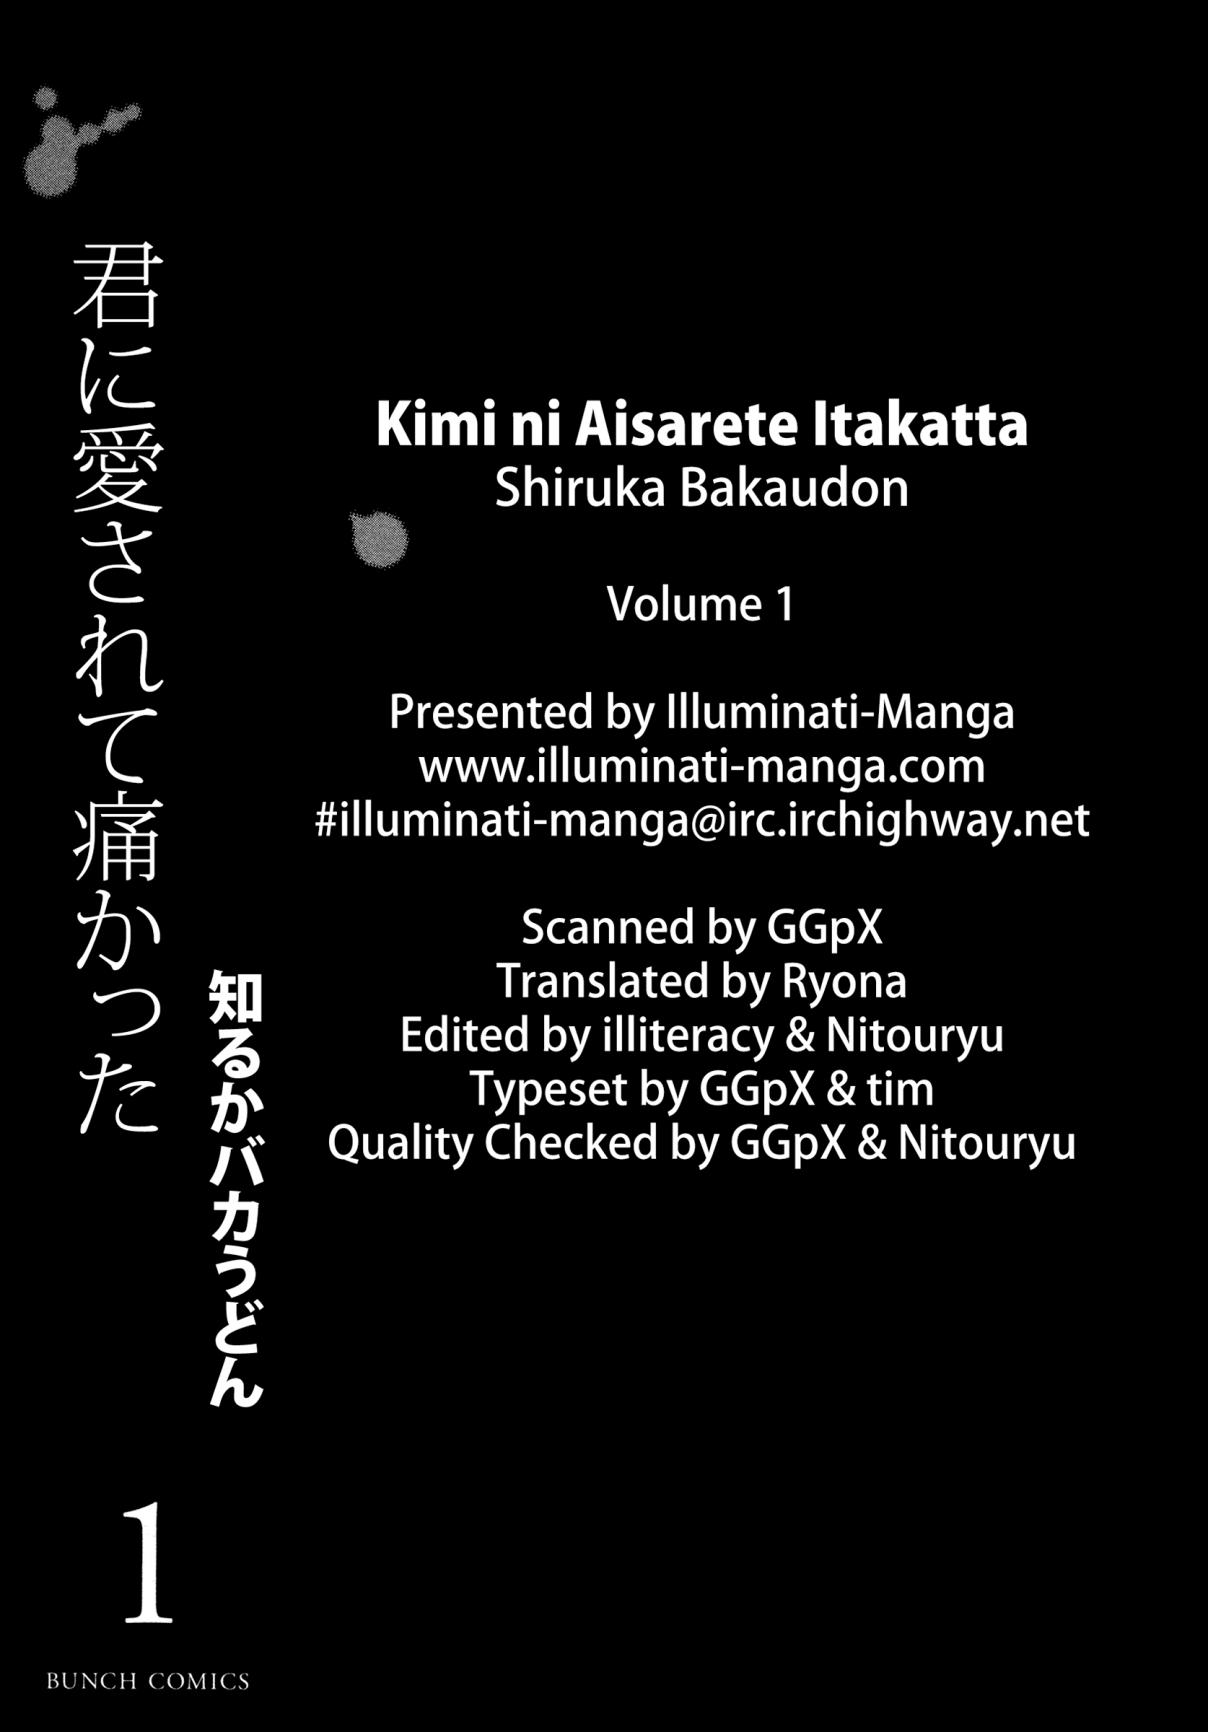 Kimi ni Aisarete Itakatta Vol. 1 Ch. 1 My Place